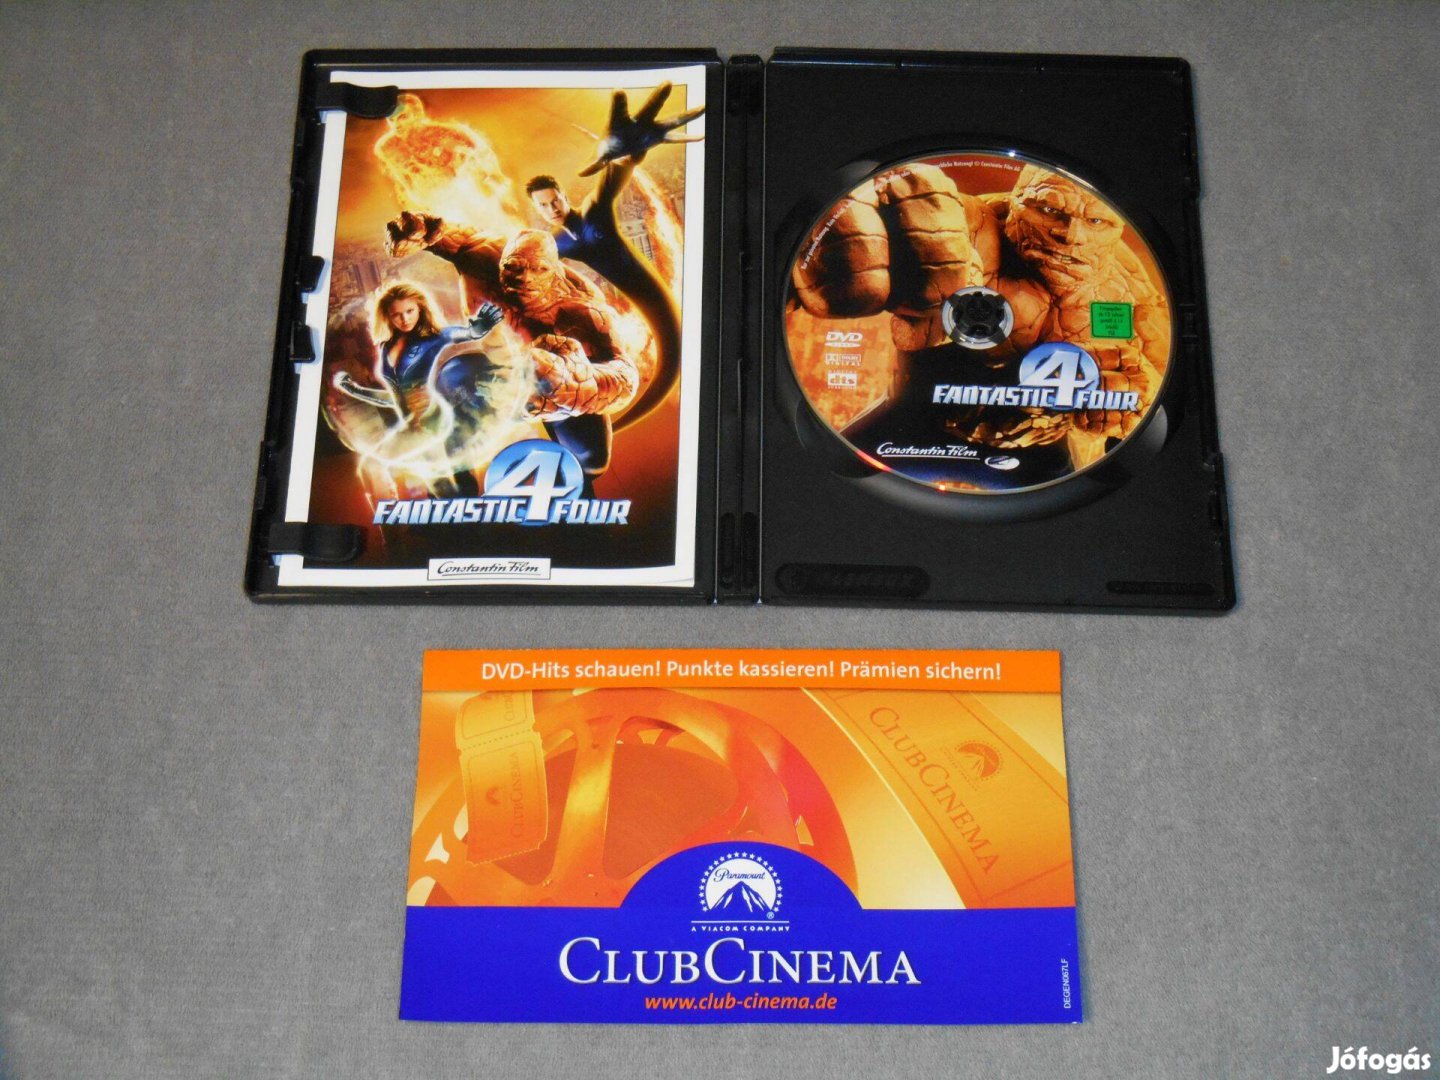 Fantastic Four / A Fantasztikus Négyes (2005) DVD film Ingyenes!